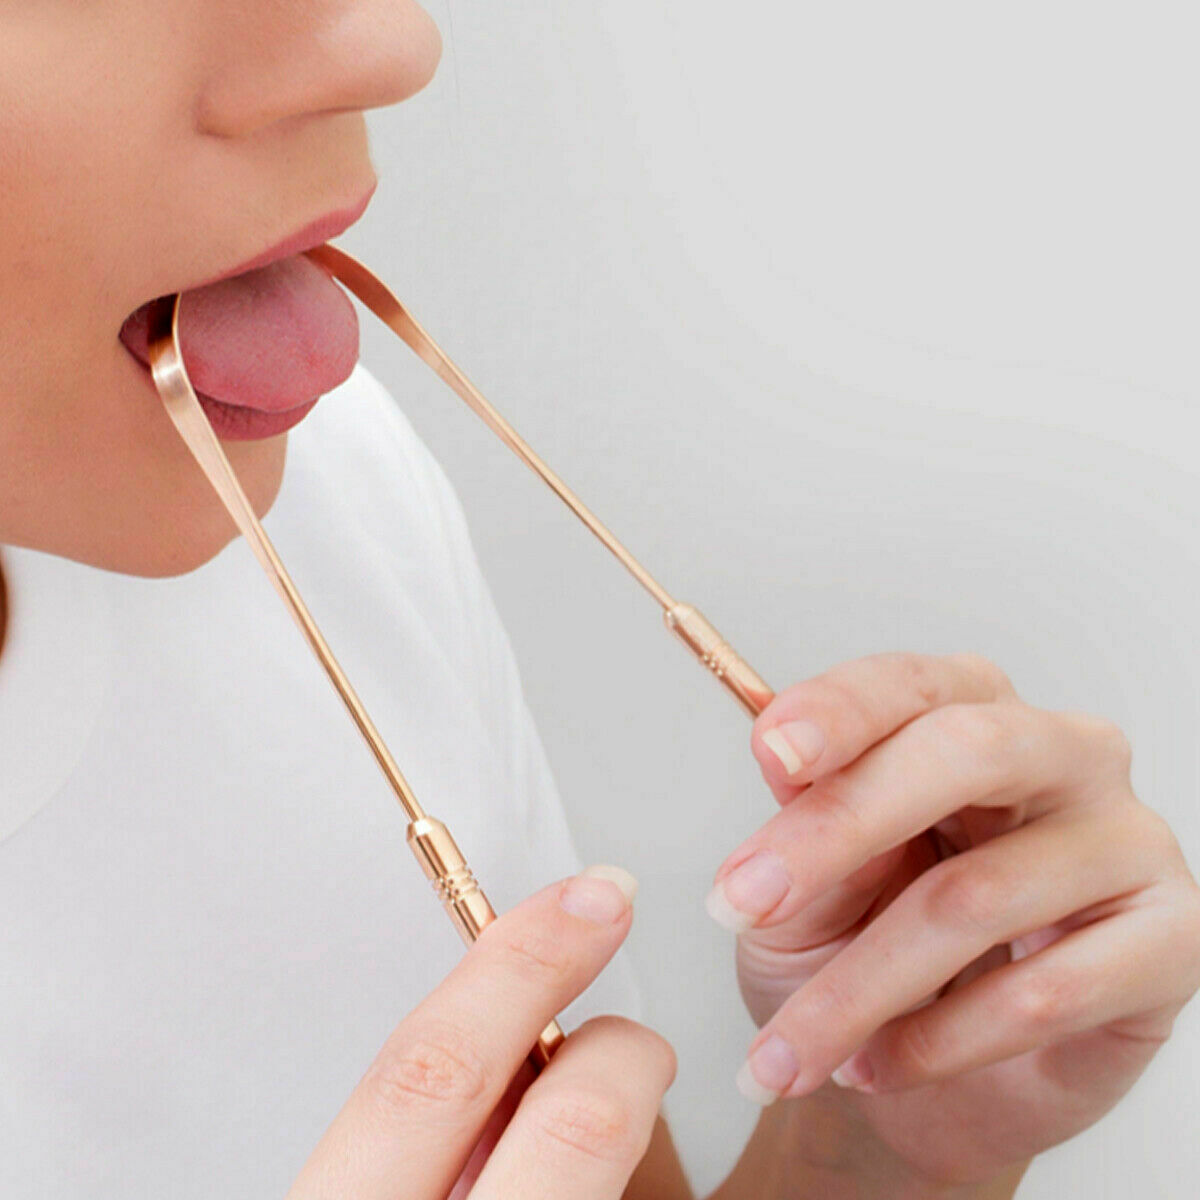 Tongue Cleaner Copper Mouth Scraper Oral Care Dental Hygiene